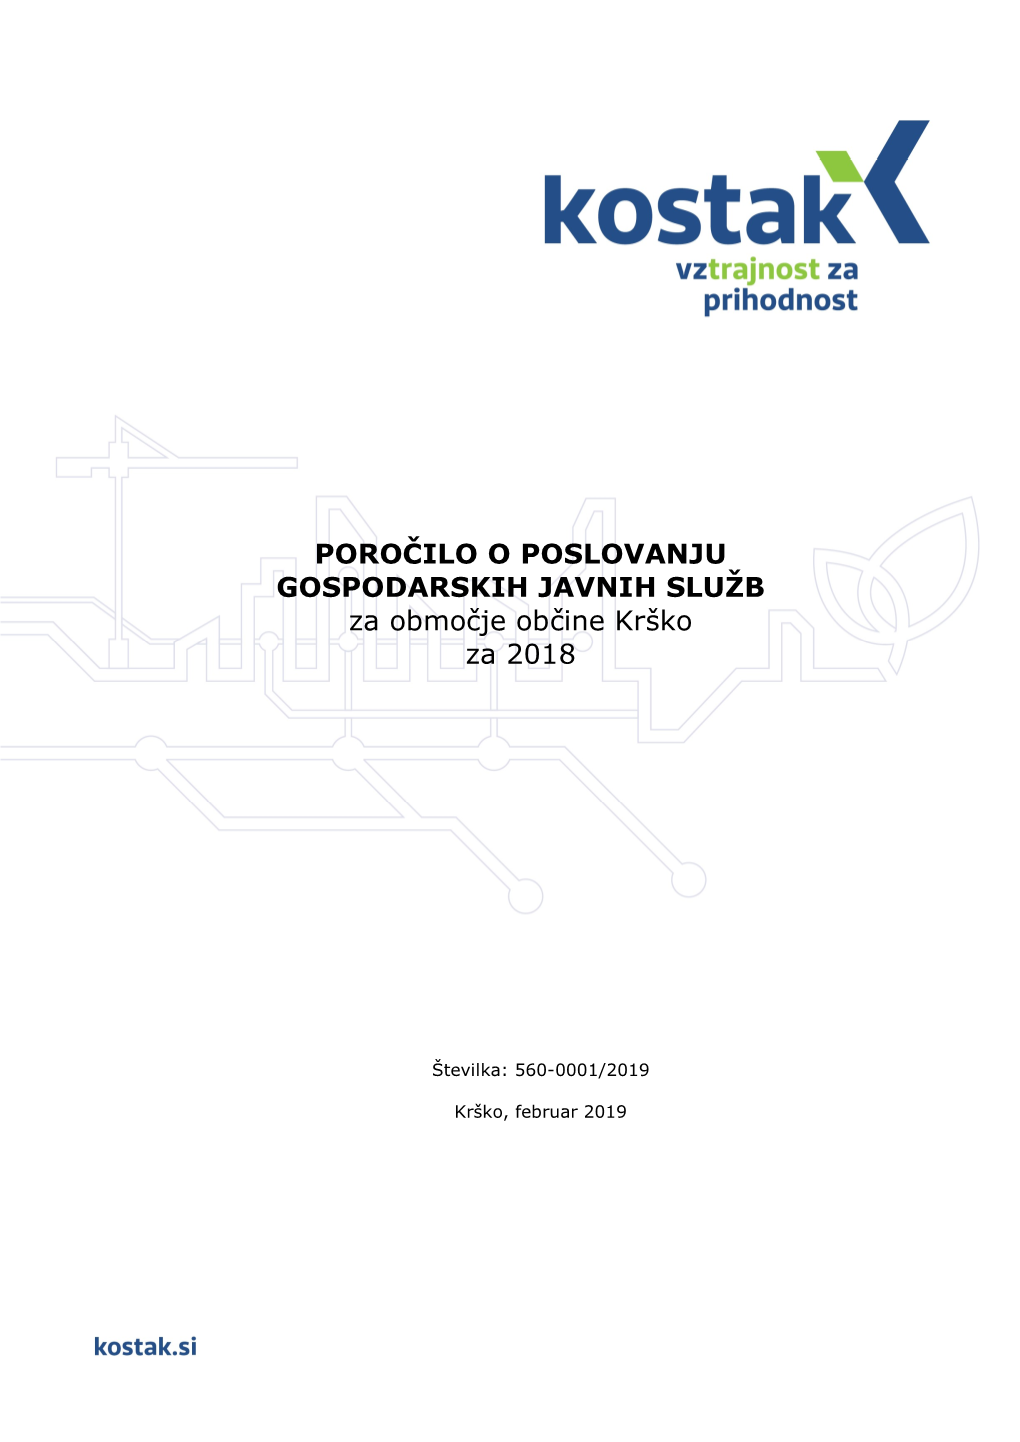 Poročilo O Poslovanju Gospodarskih Javnih Služb Za Območje Občine Krško V 2018